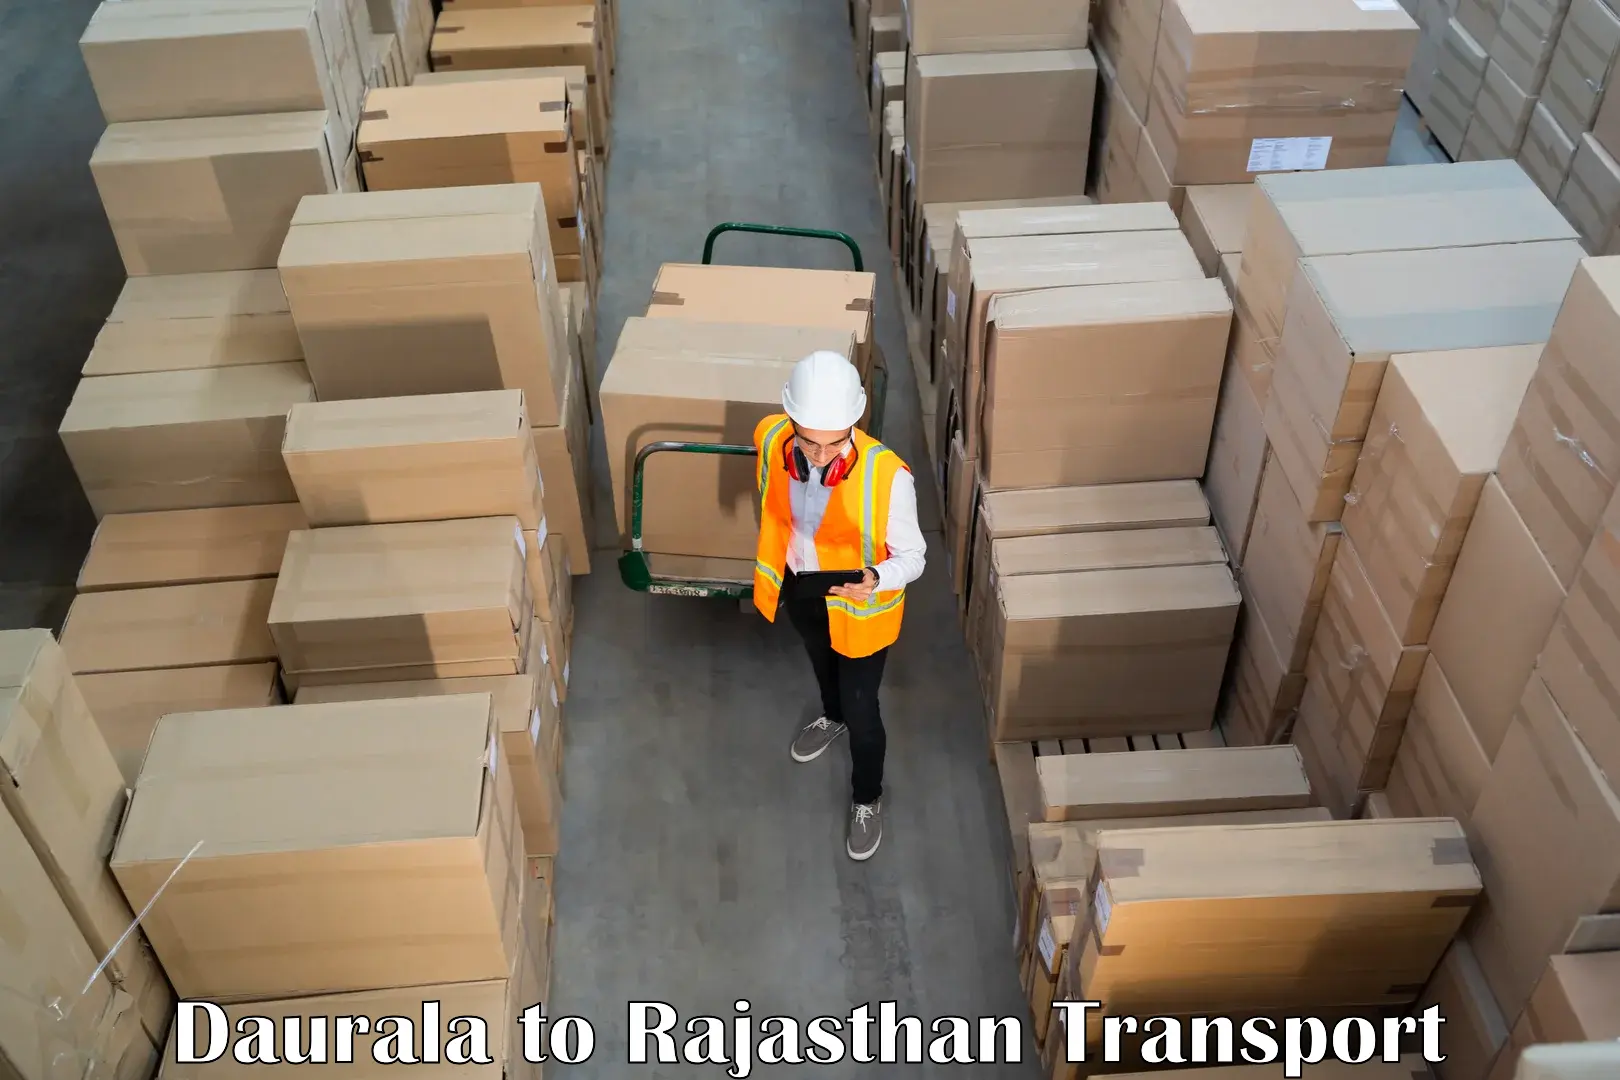 Cargo transportation services Daurala to Sri Vijaynagar